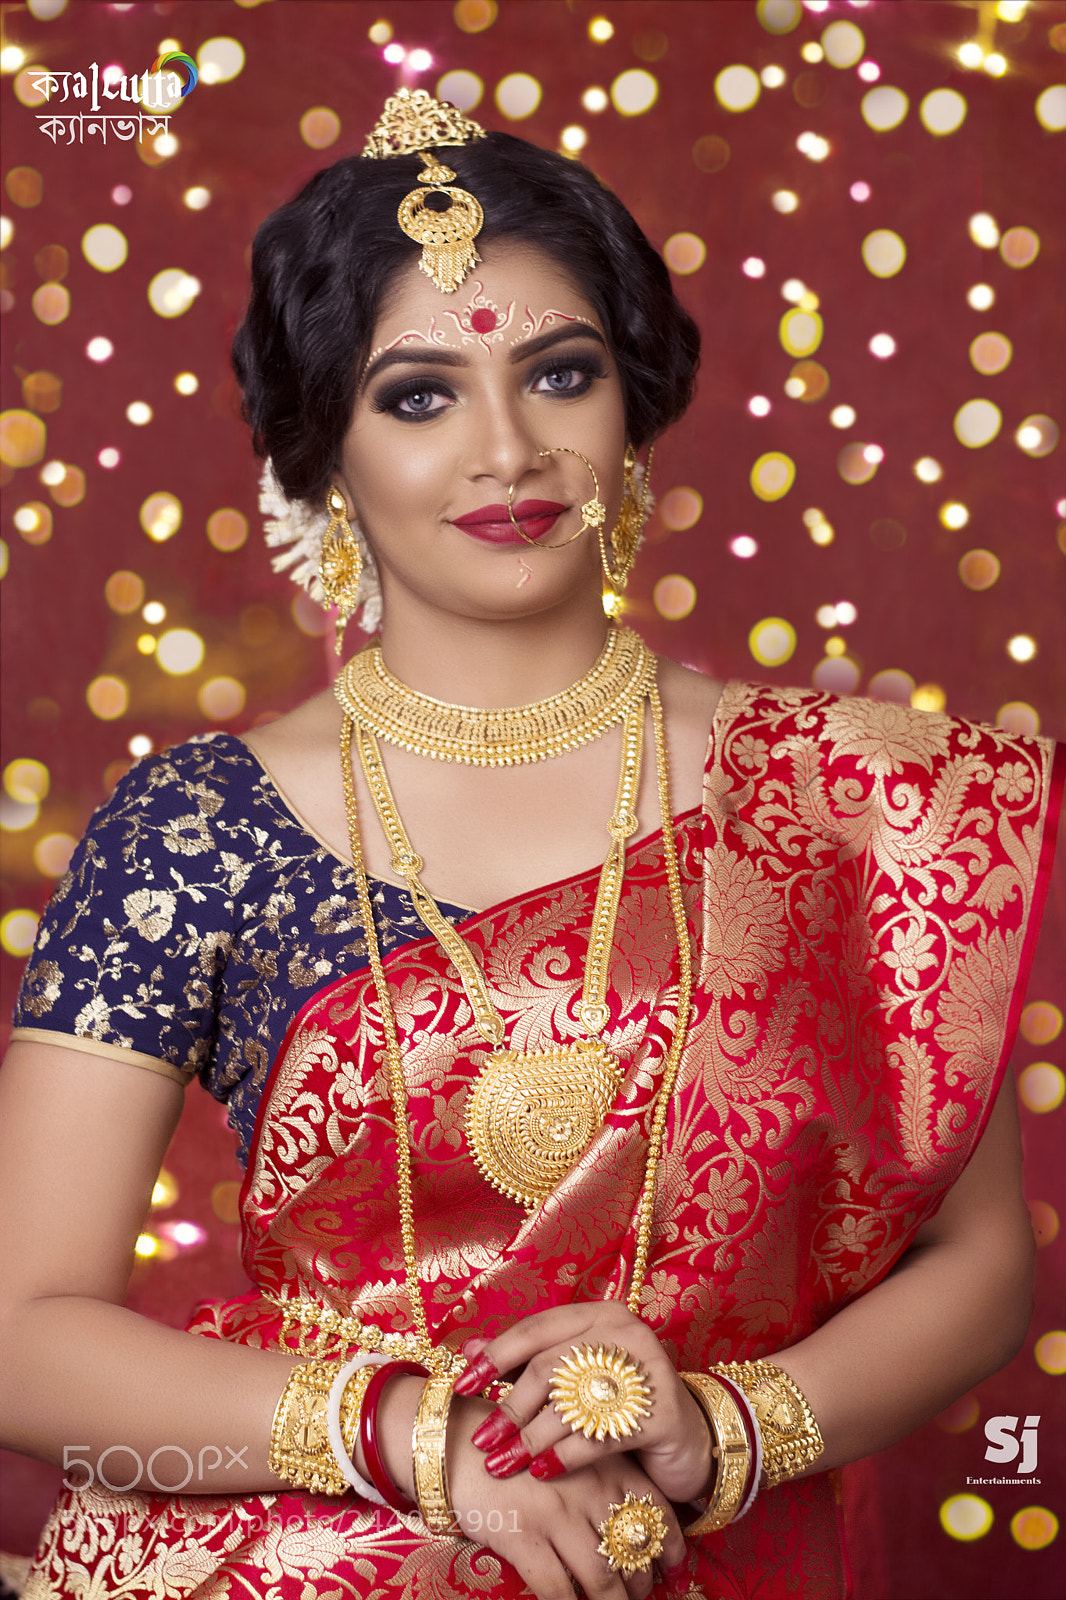 Nikon D5200 sample photo. Bengal bride photography